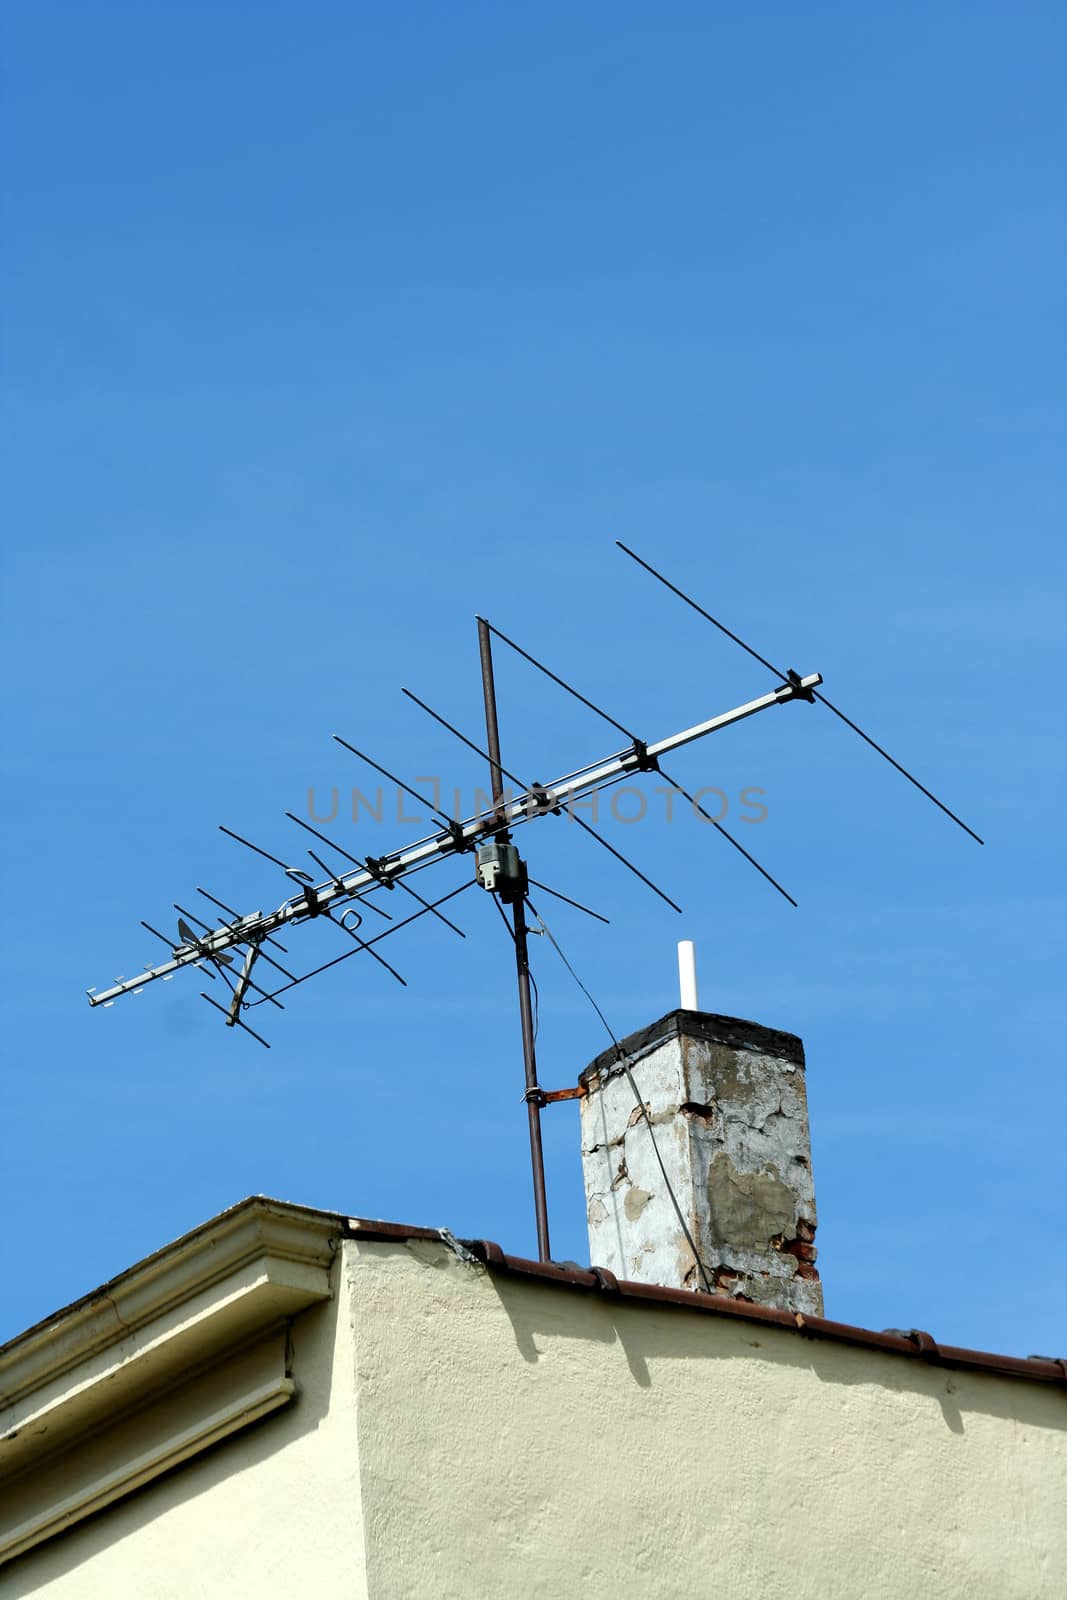 Old TV antenna by njnightsky